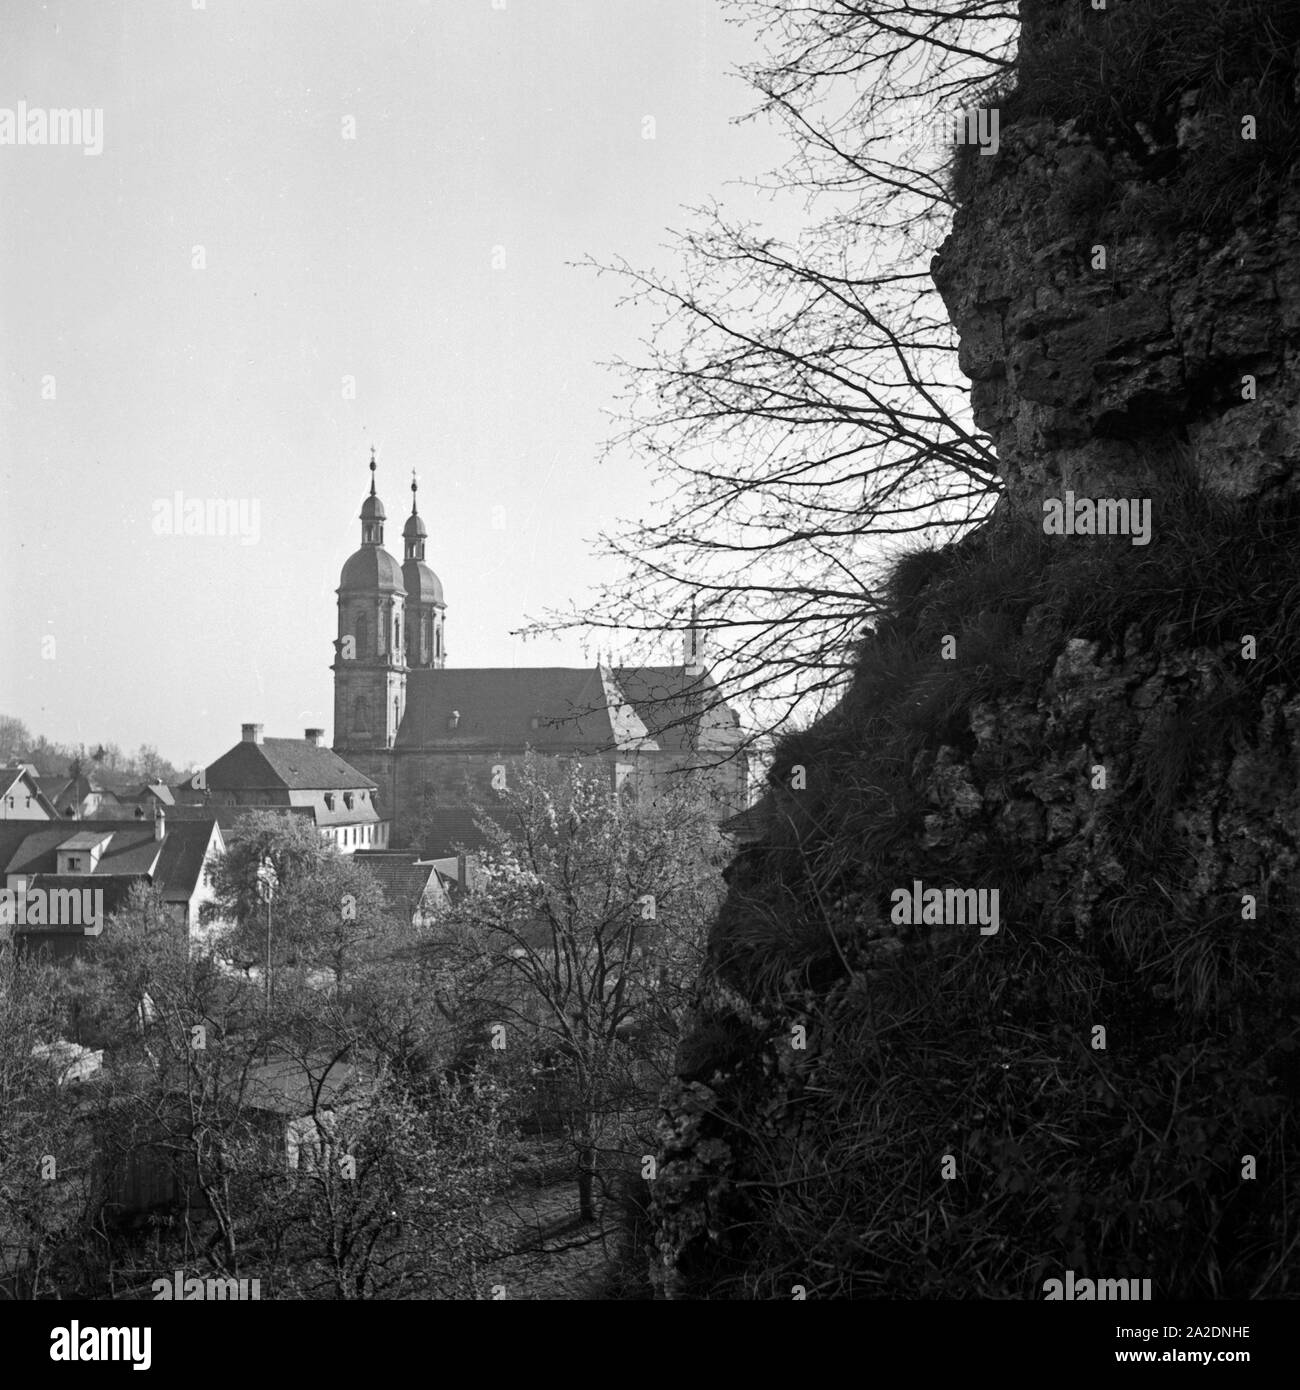 Die Wallfahrtsbasilika in Gößweinstein in der Fränkischen Schweiz, Deutschland 1930er Jahre. Pilgrimage basilica at the village Goessweinstein at the Franconian Switzerland, Germany 1930s. Stock Photo